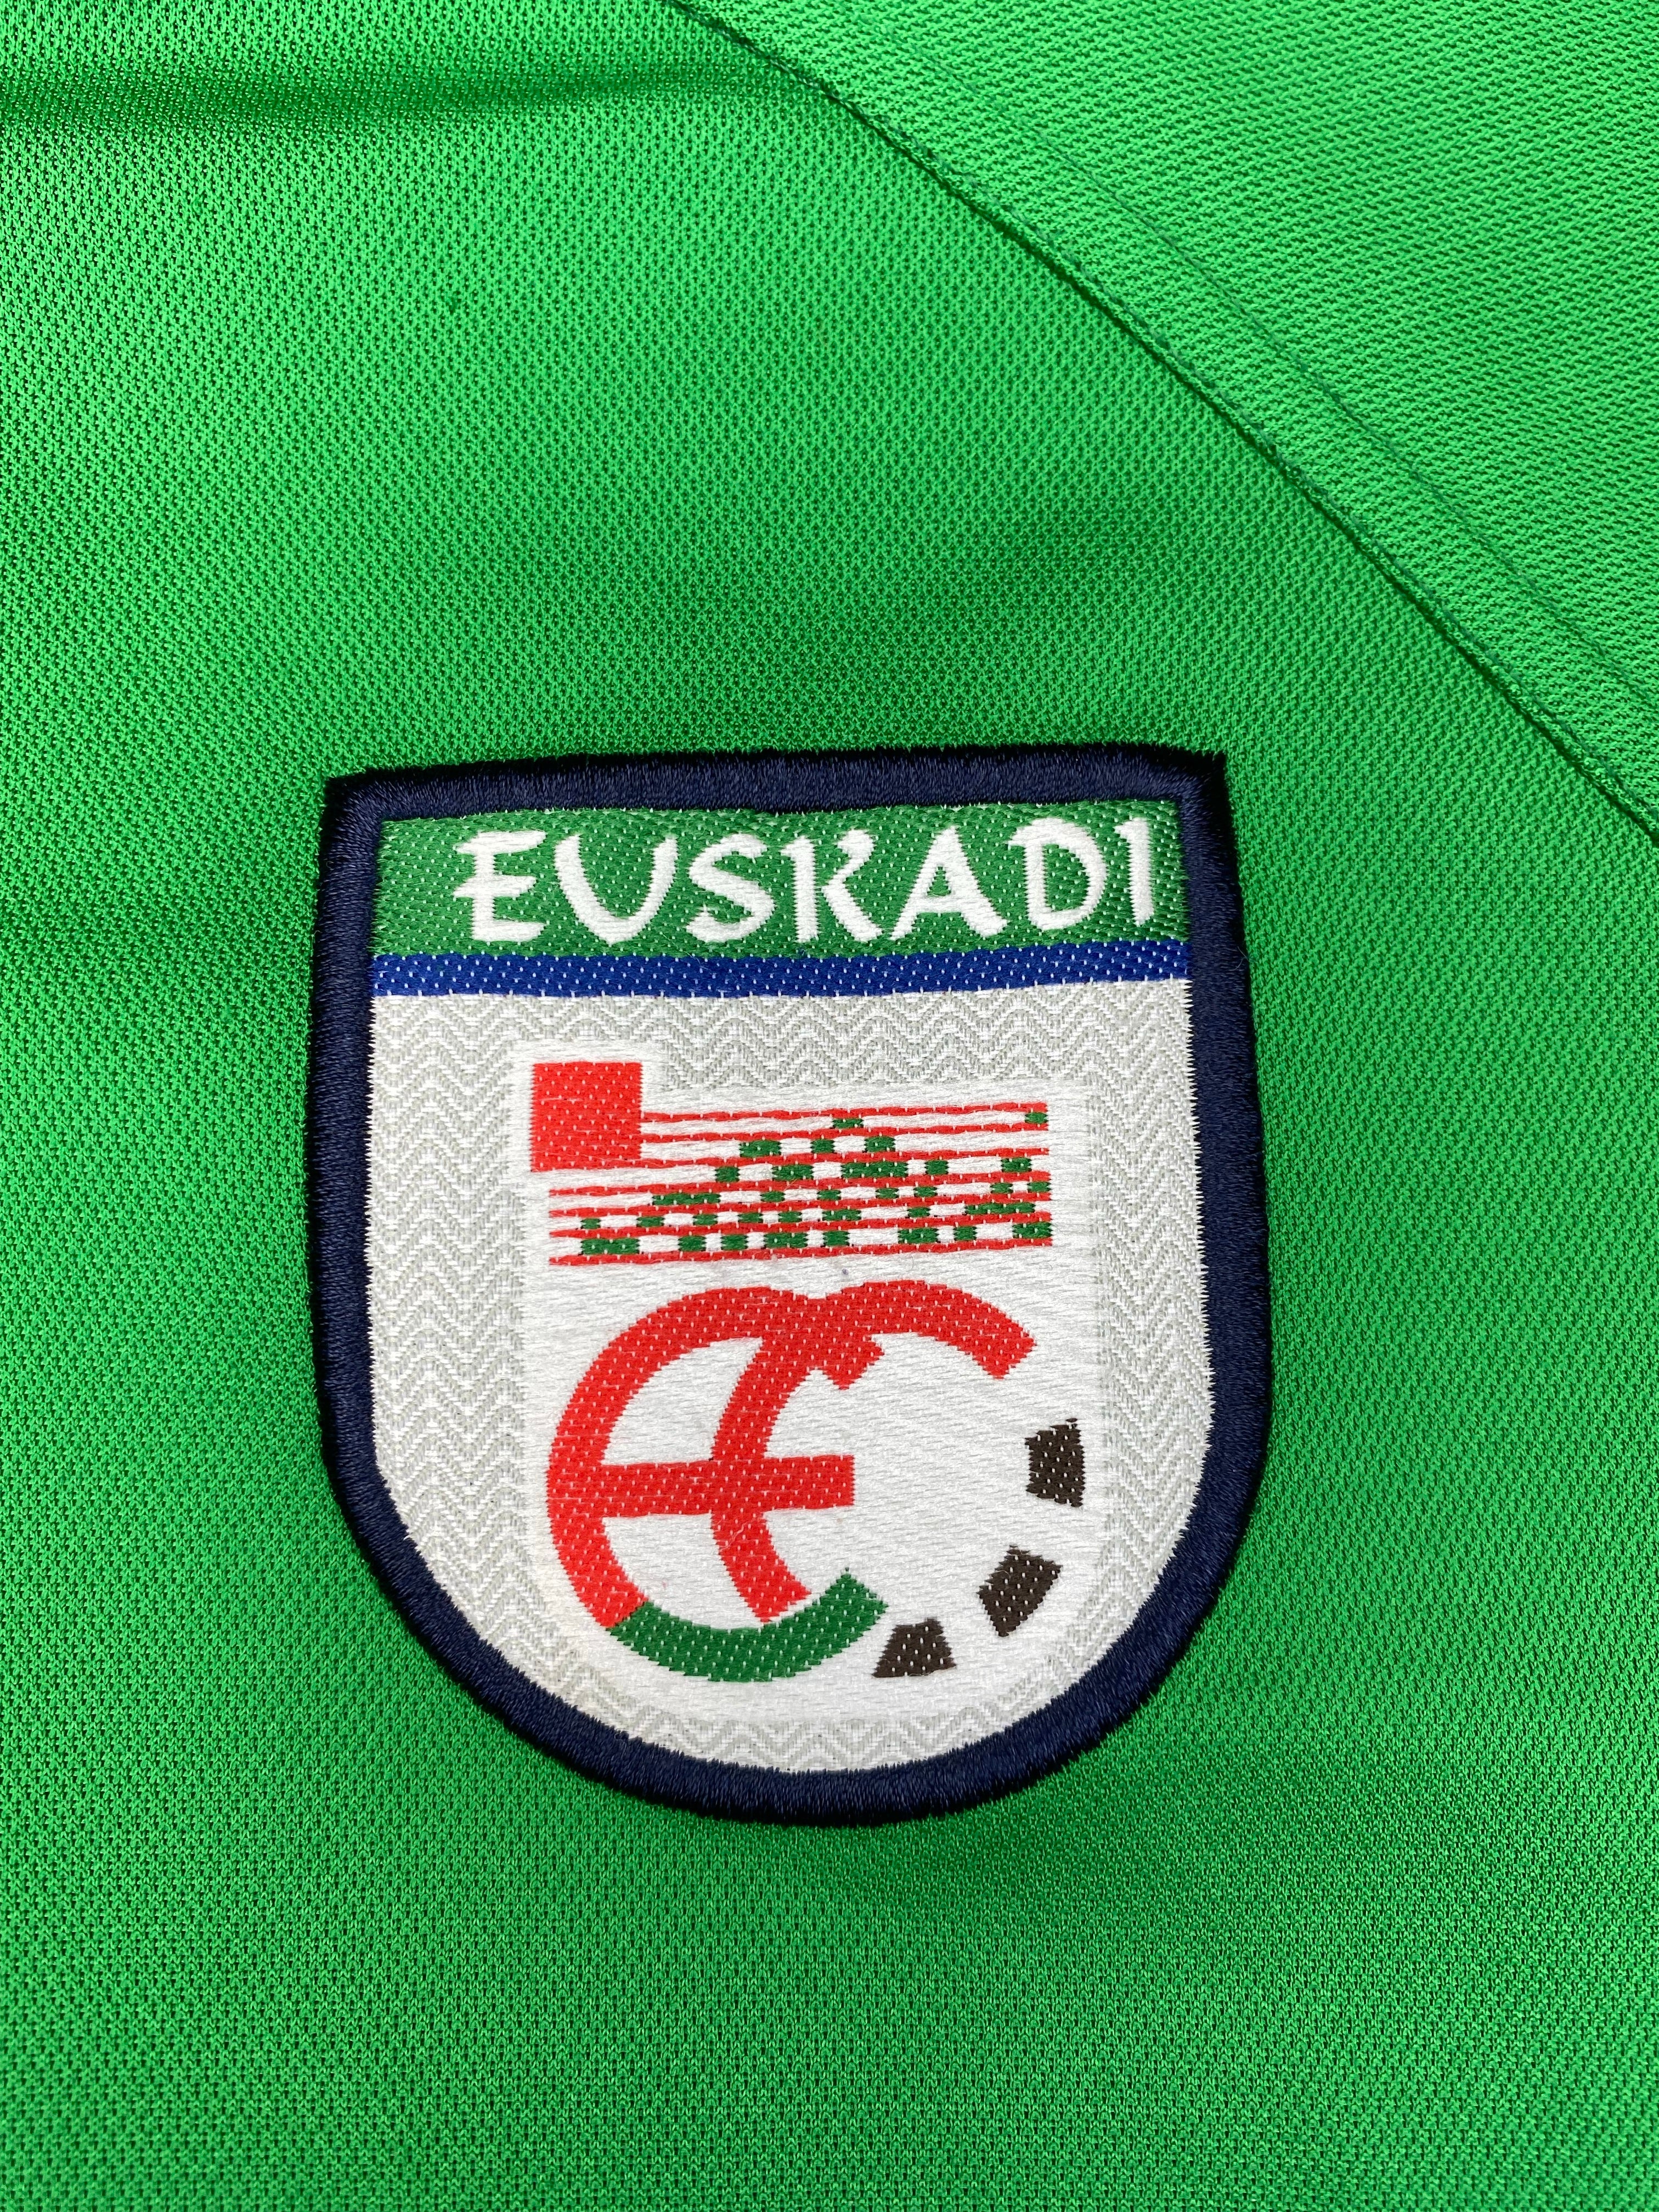 2002/04 Euskadi (Basque Country) Home Shirt (M) 9/10